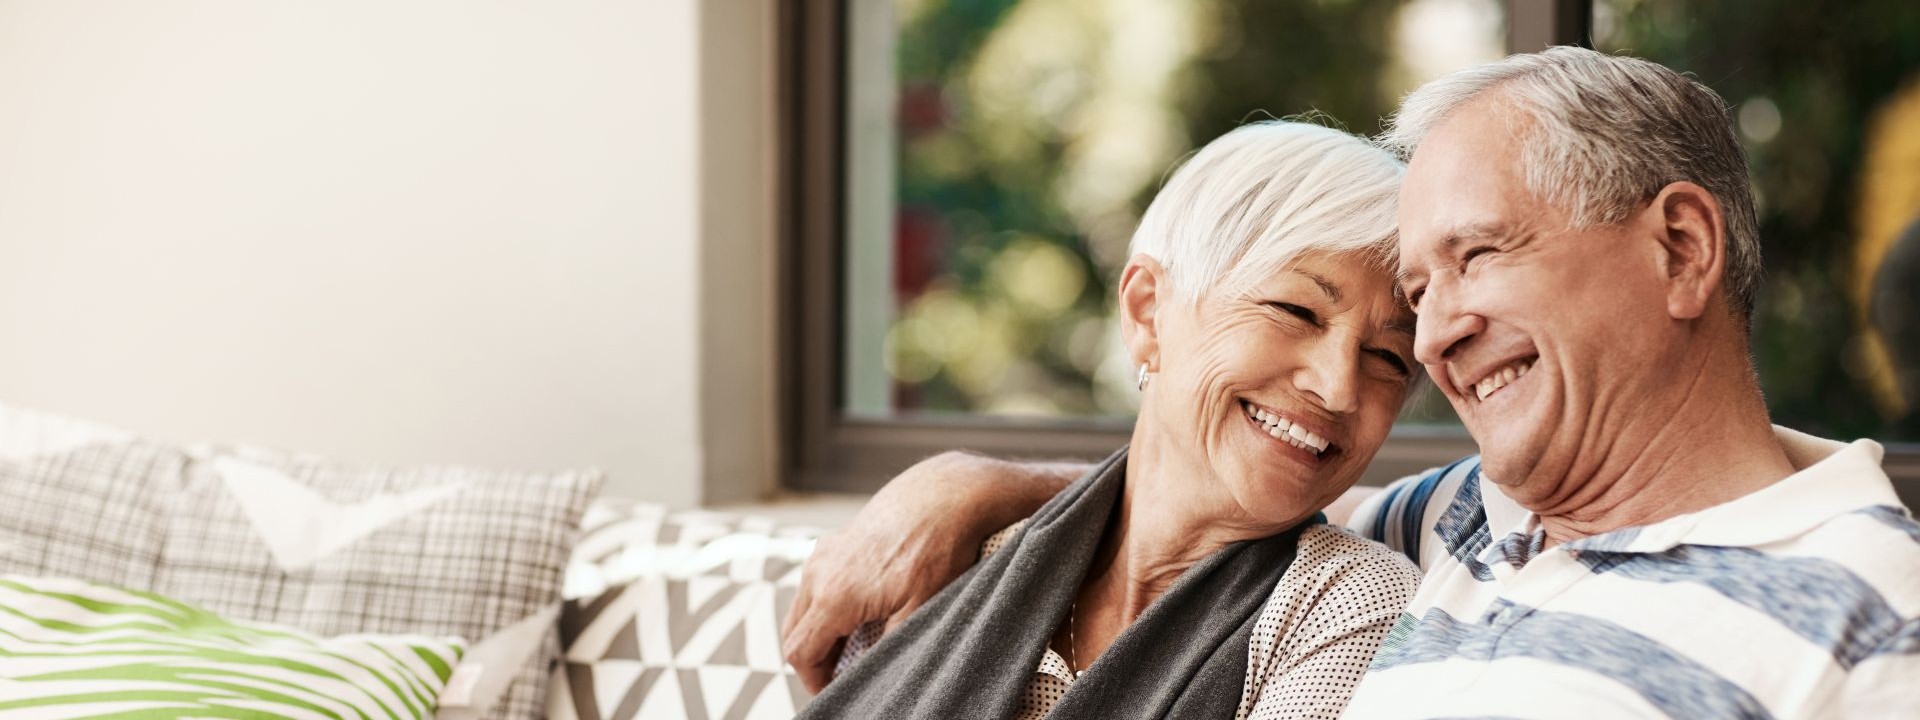 Ein Seniorenpaar sitzt Arm in Arm auf einem Sofa. Beide lächeln.